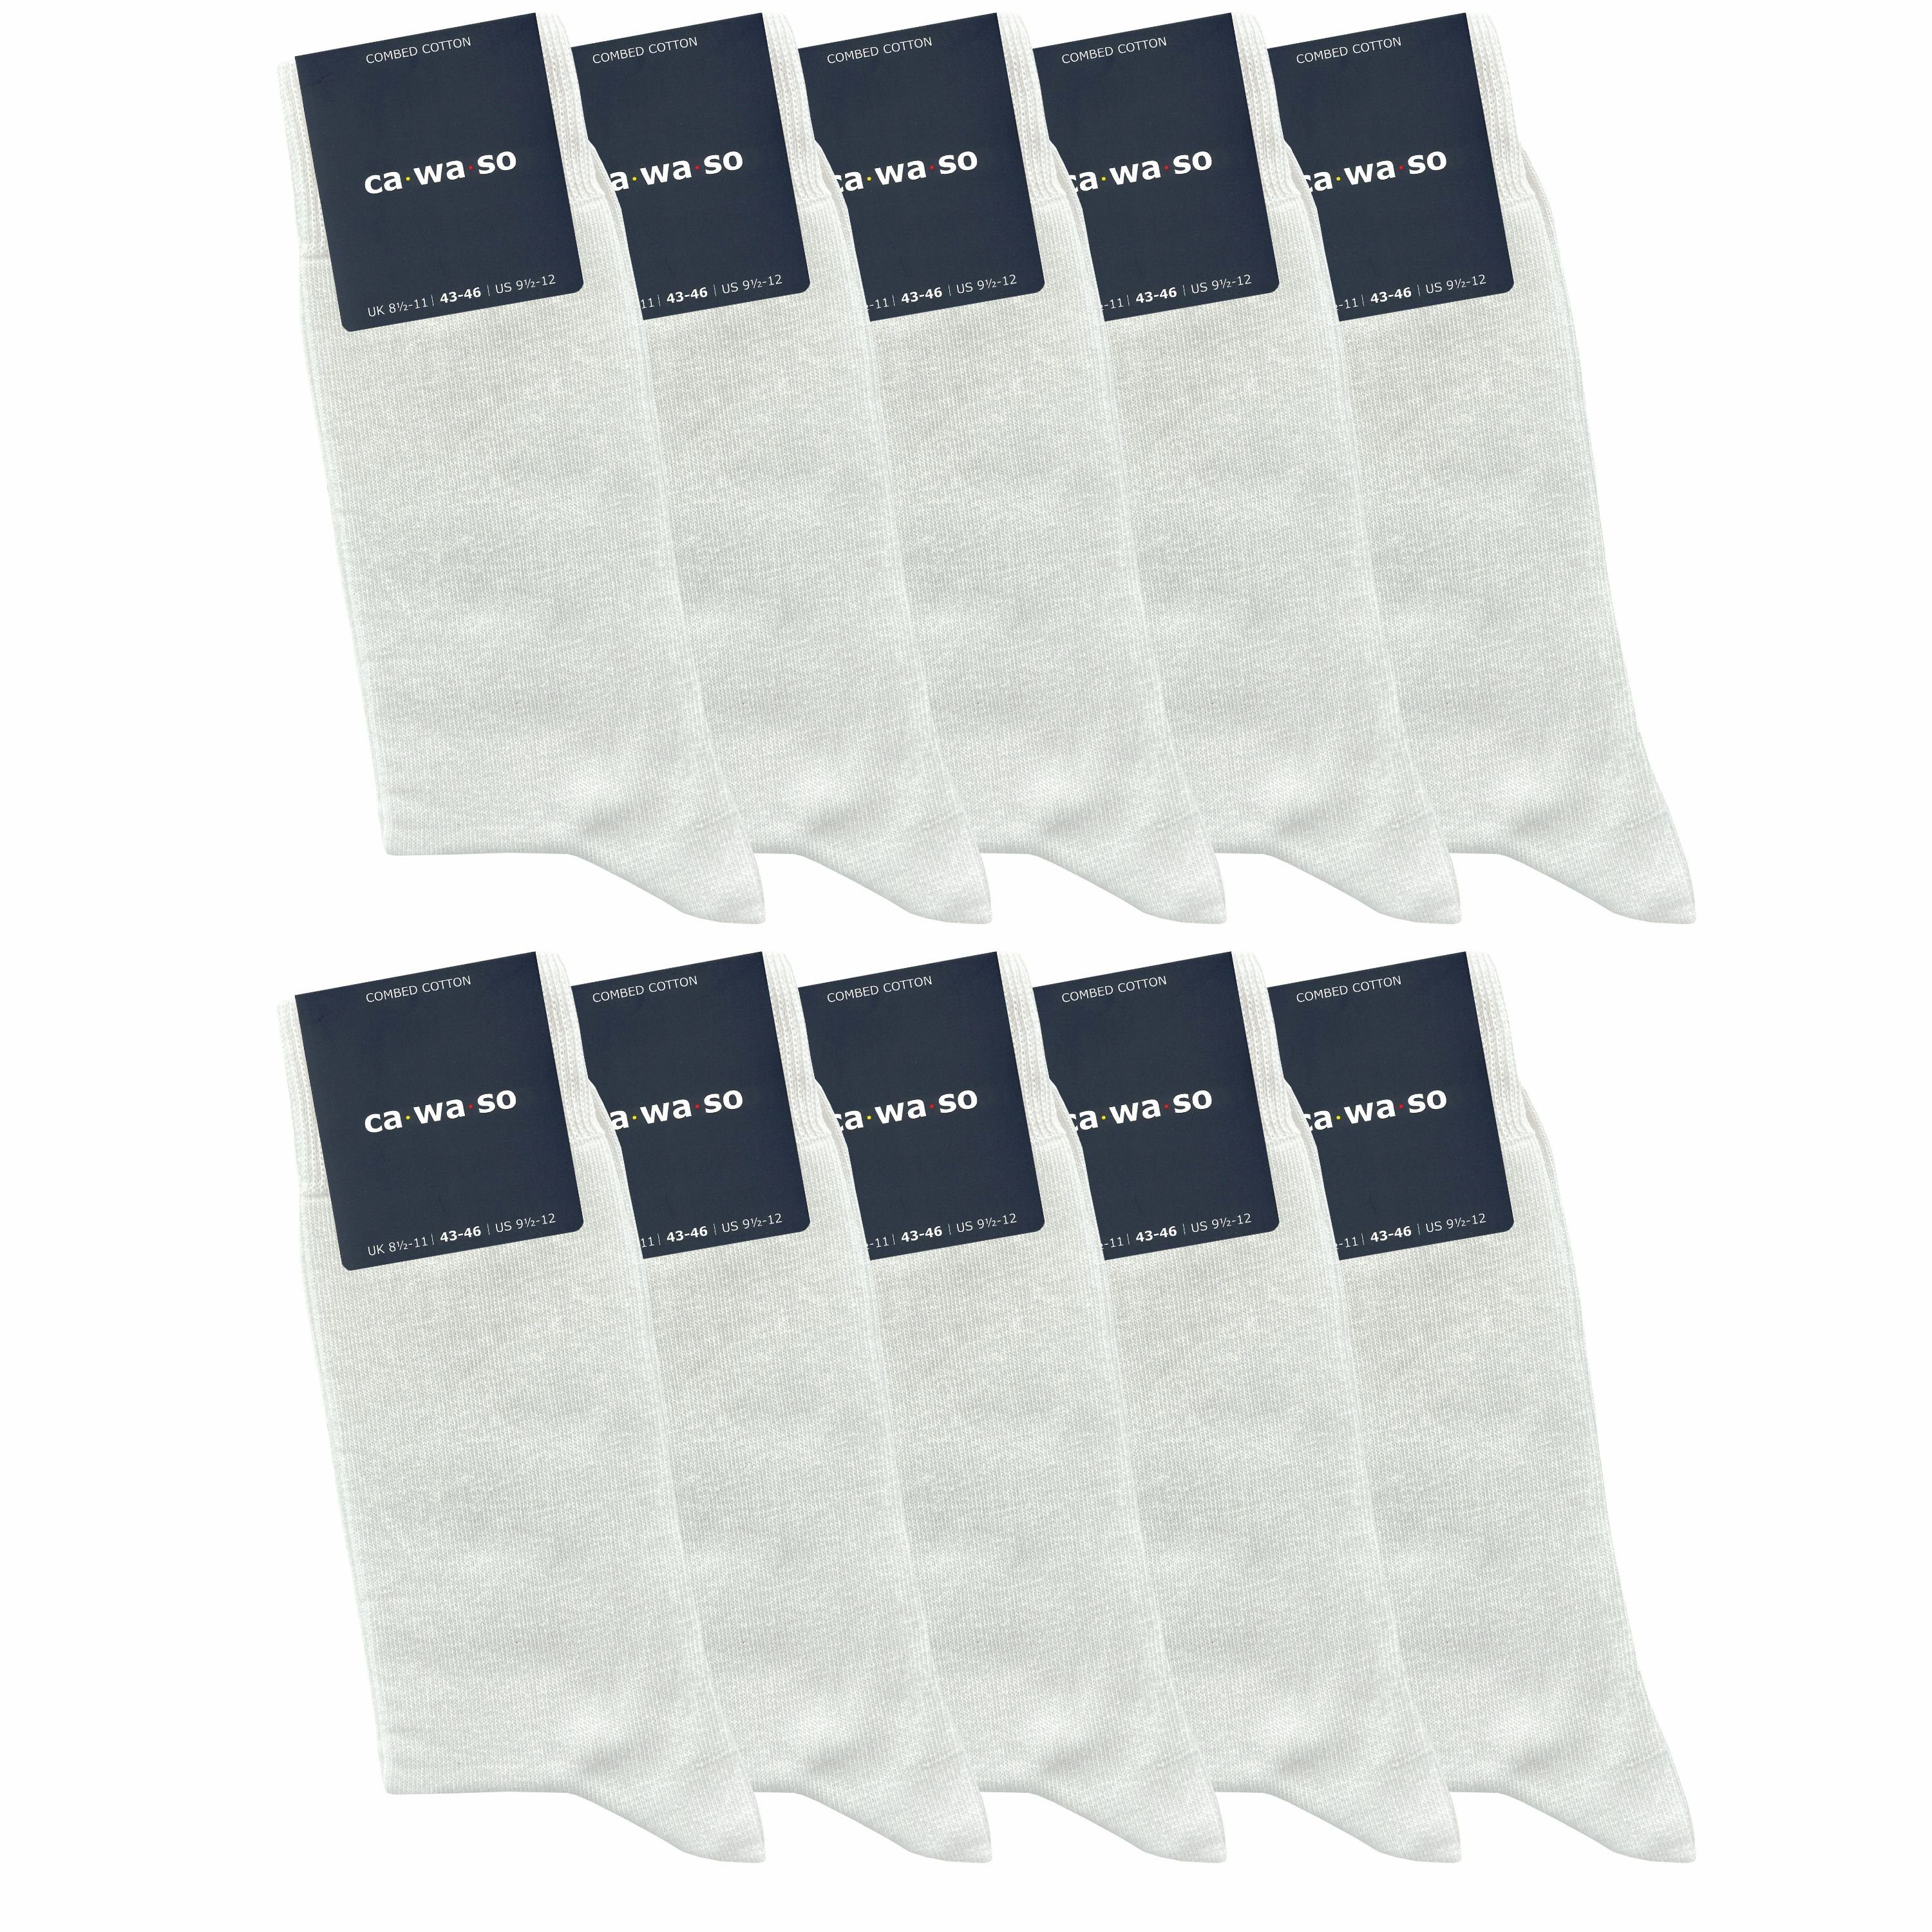 aus und Herren & weiß blau ca·wa·so weiteren bunt, Baumwolle schwarz, Paar) & Farben - doppelt in (10 Damen - bequem gekämmter für grau, Socken weich Socken